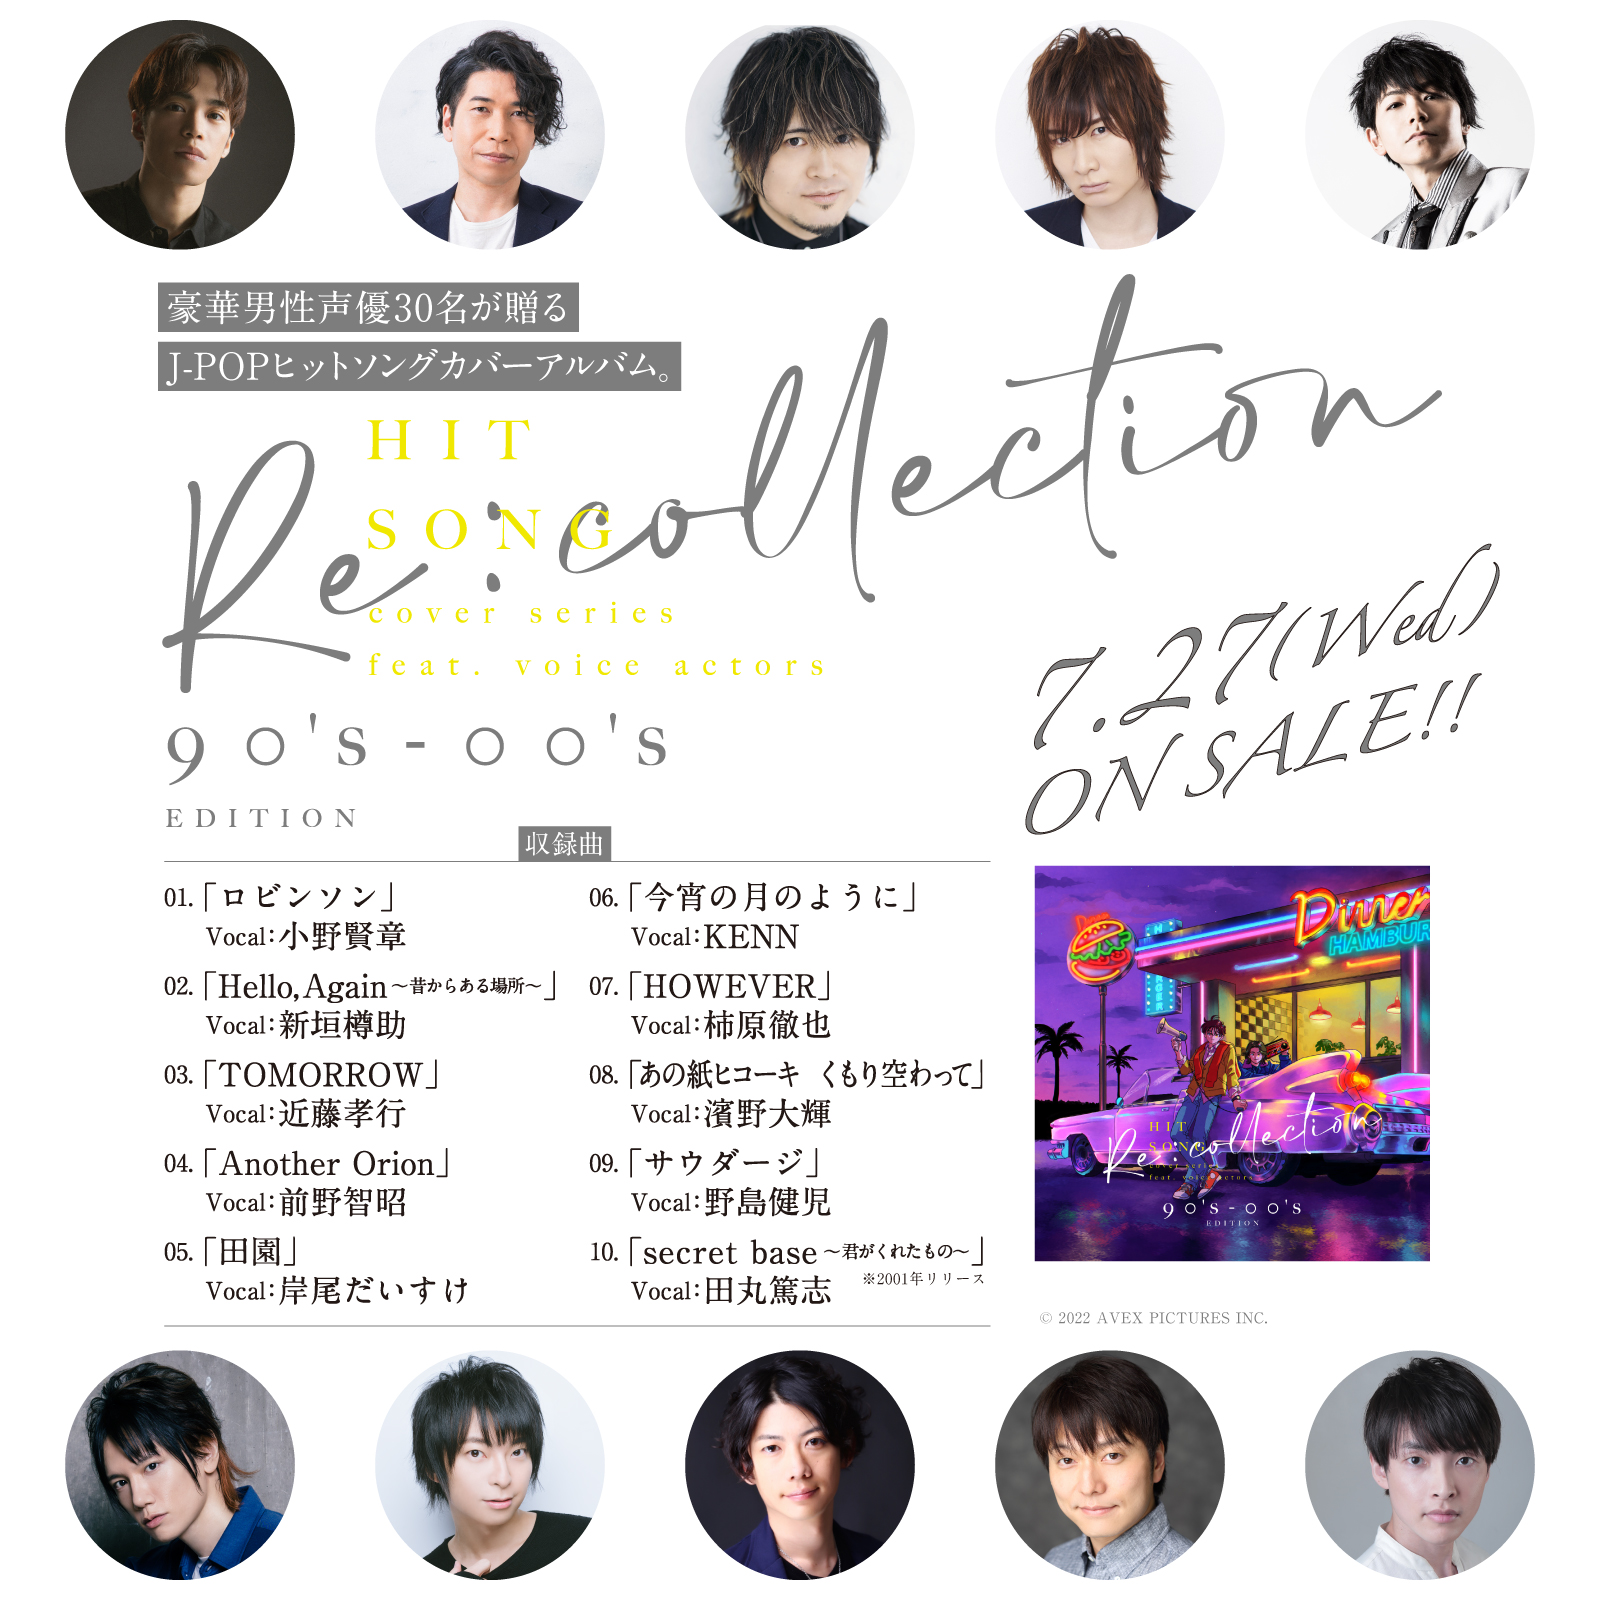 【収録曲一覧】[Recollection] HIT SONG cover series feat.voice actors~90's-00's EDITION~